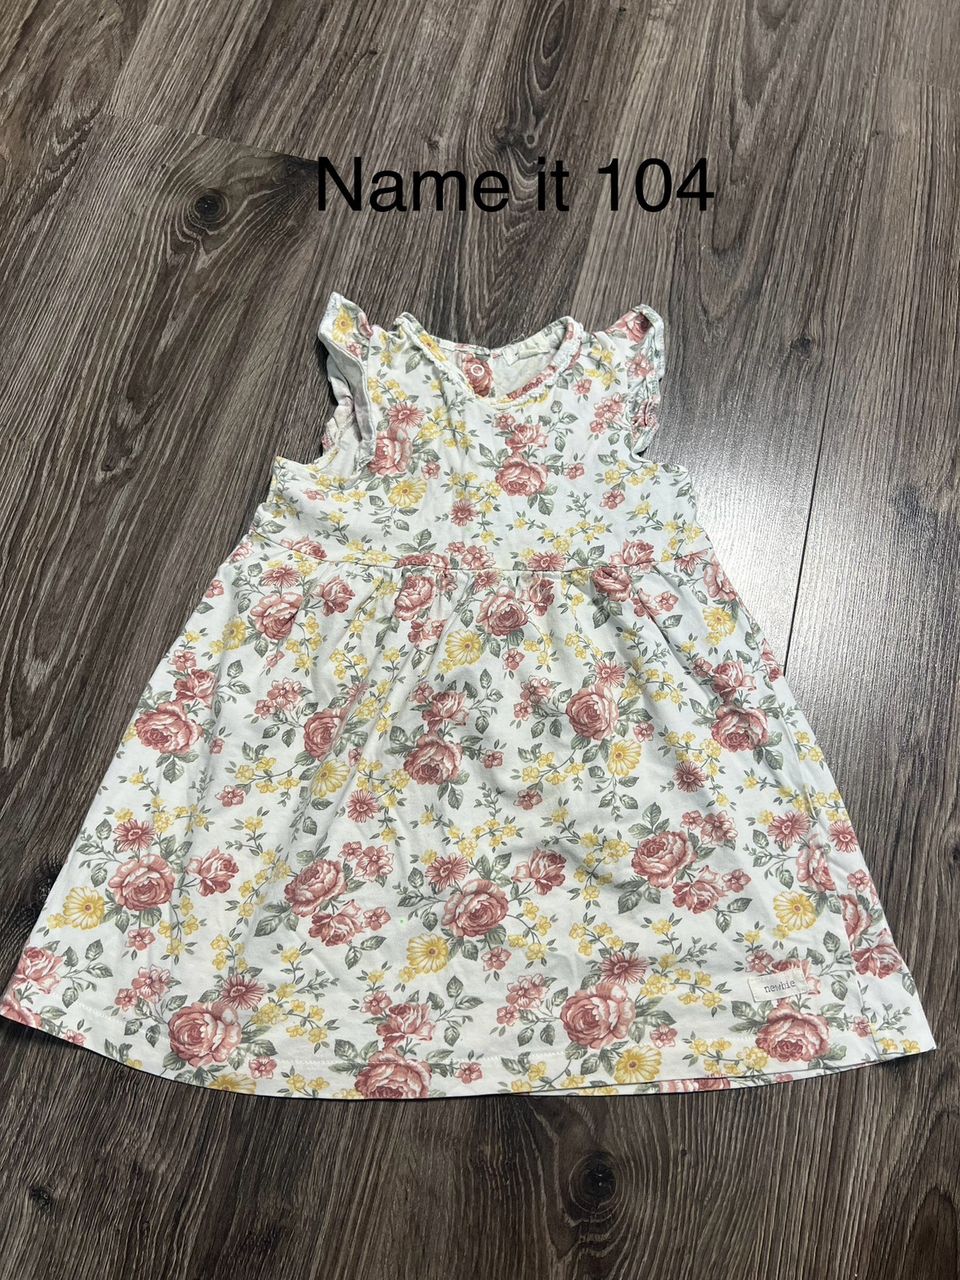 Newbie mekko 104